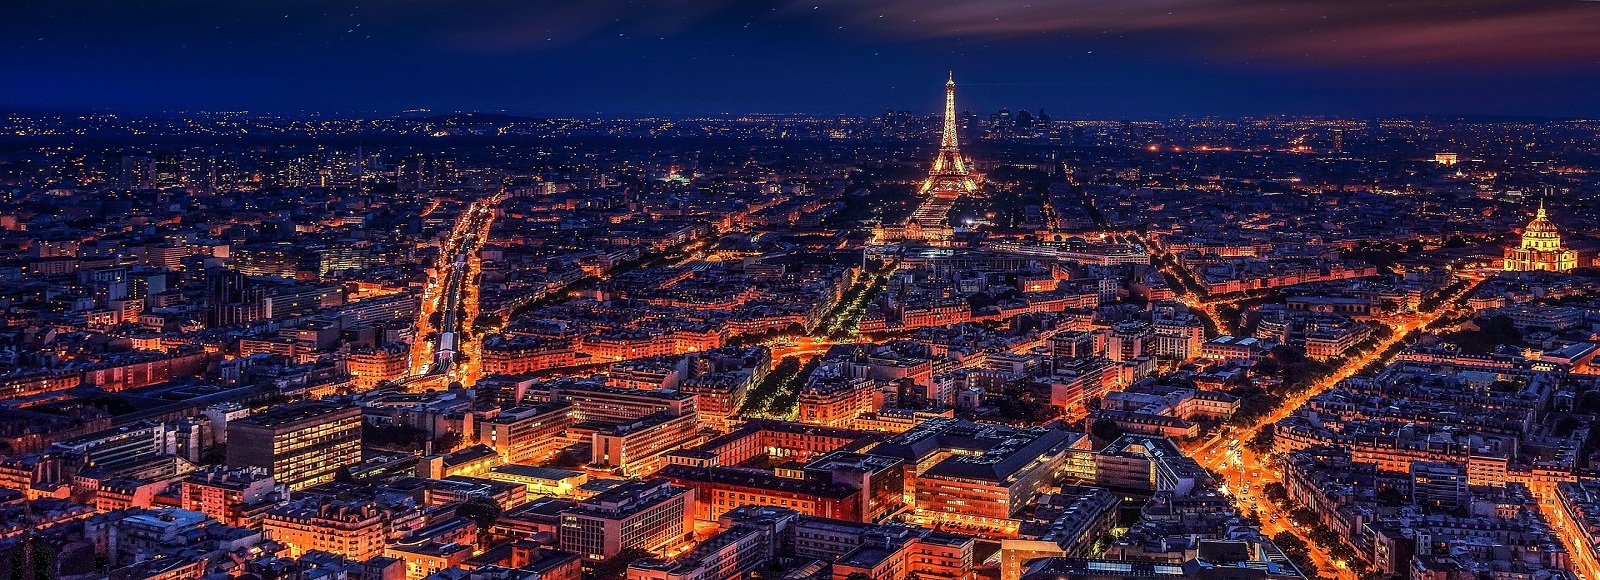 Ofertas de Traslados en Paris. Traslados económicos en Paris 